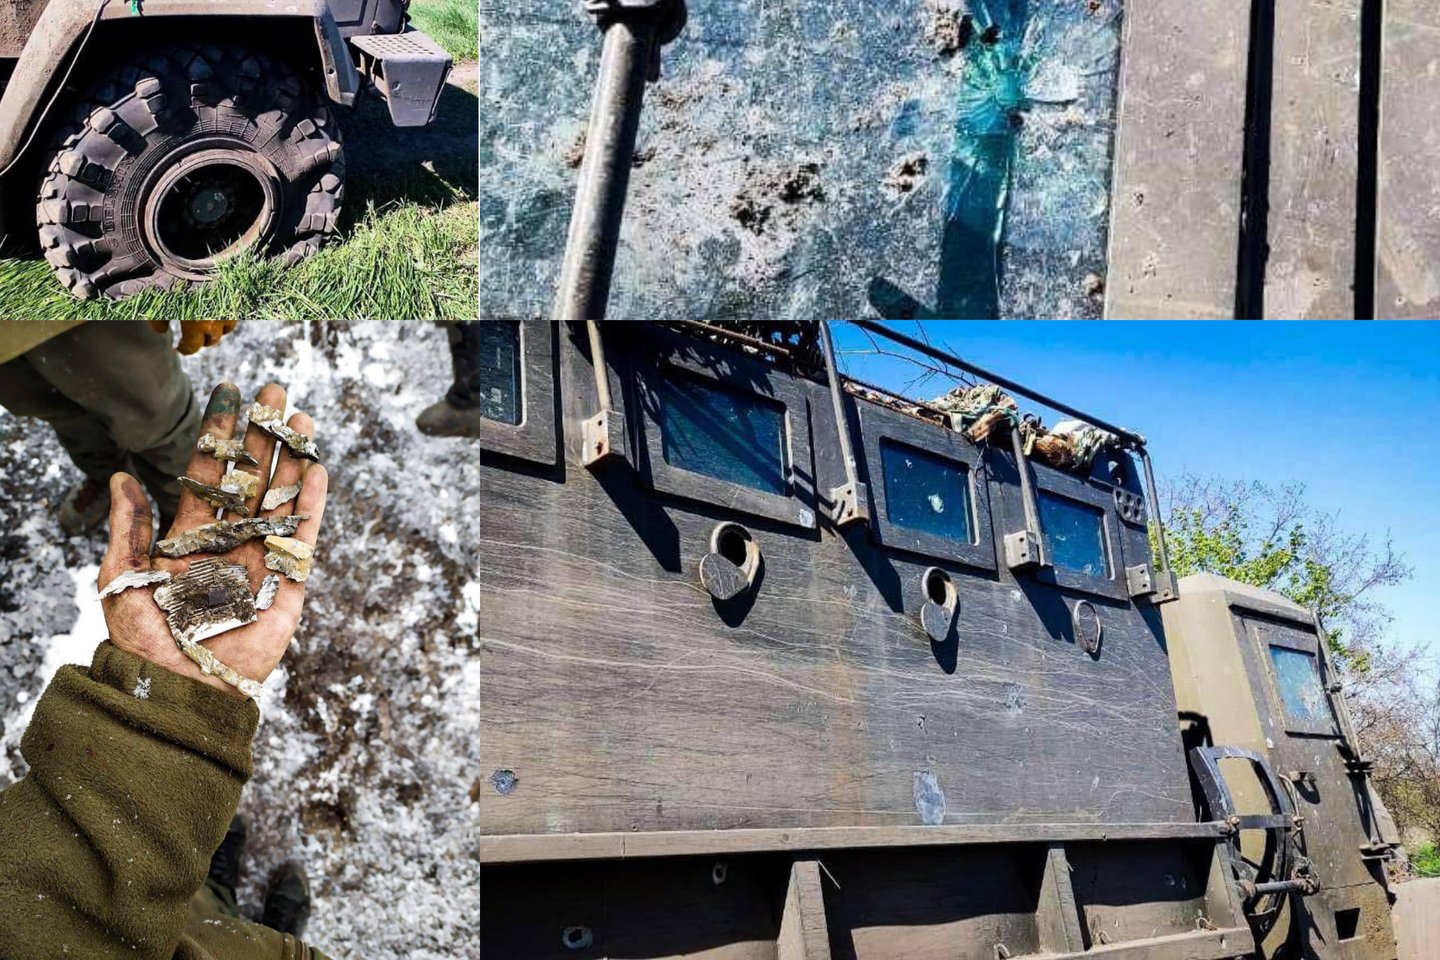  Rizikuodamas savo gyvybe, vairuotojas į saugią zoną išvežė šimtus sužeistų bendražygių, patyrusių sužeidimus tarnaujant tiek Nacionalinėje gvardijoje, tiek kituose ukrainiečių kariniuose daliniuose.<br> Ukrainos VRM nuotr.